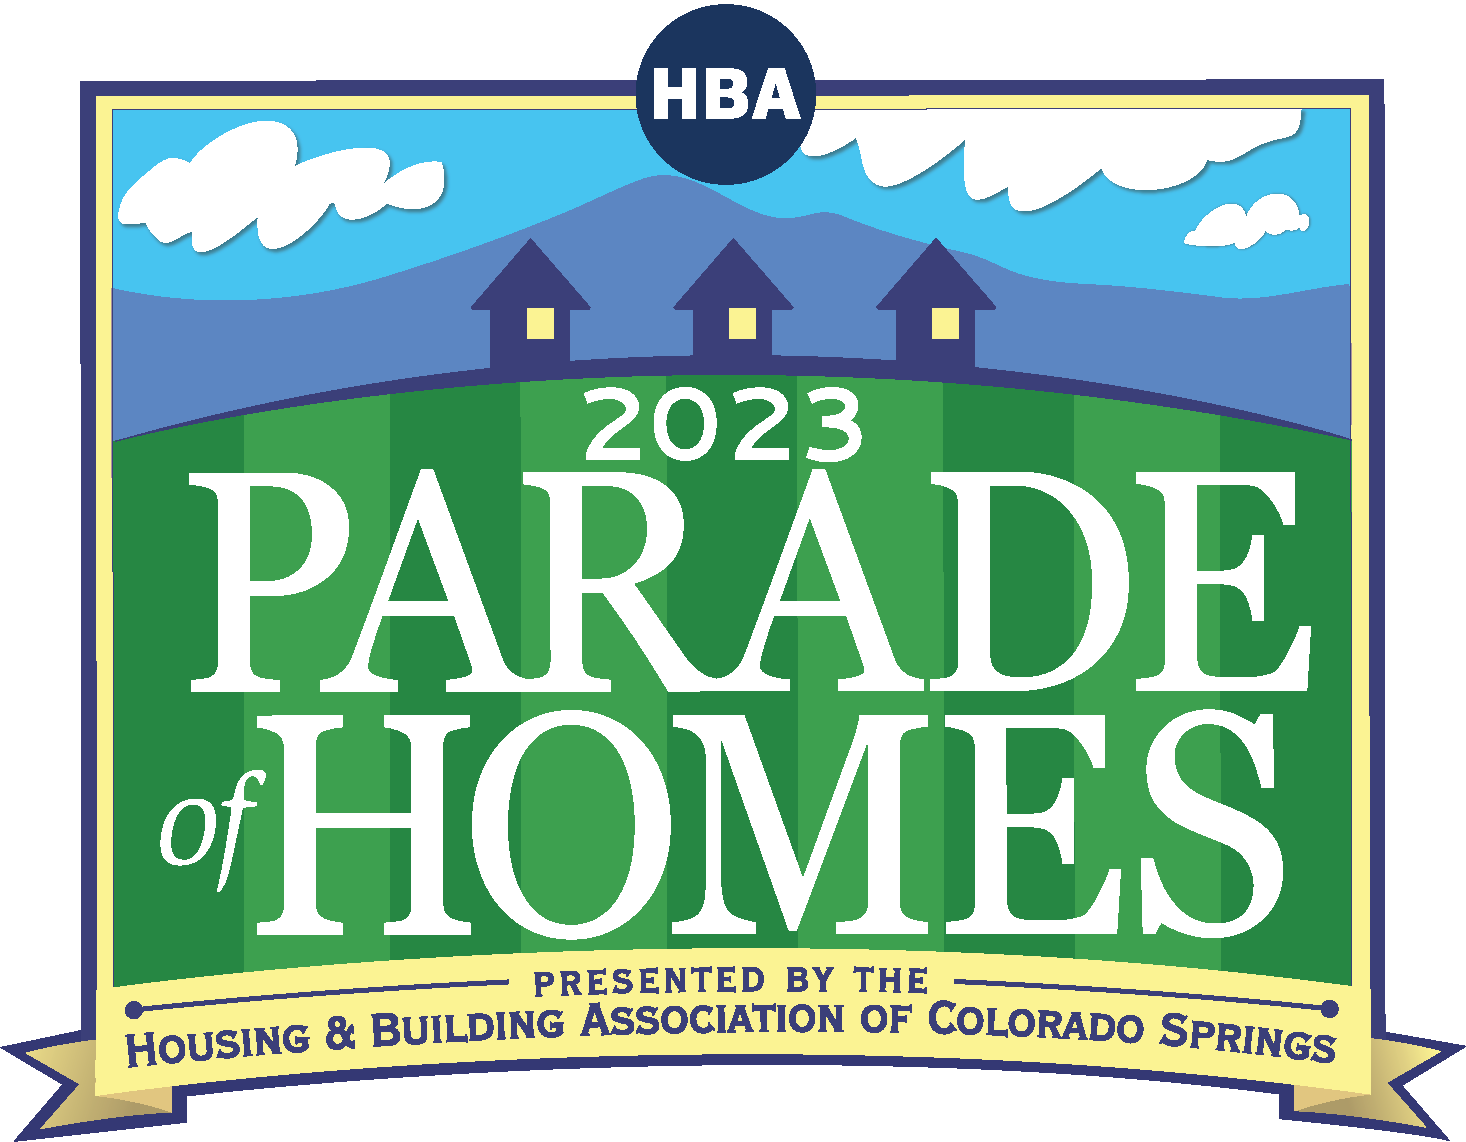 Colorado Springs Parade of Homes